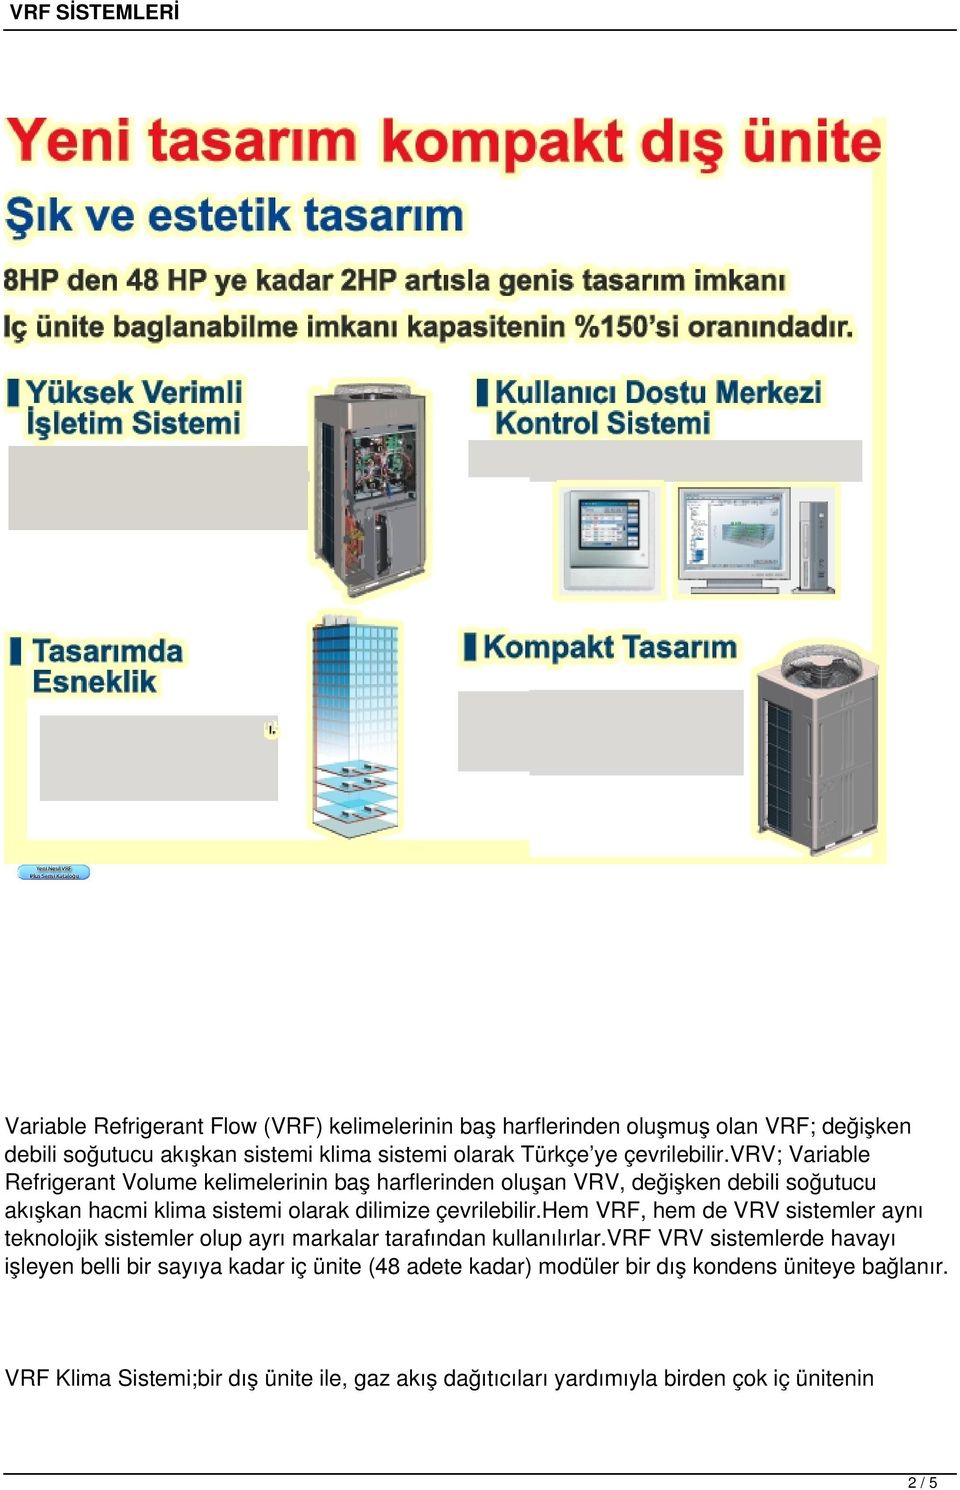 vrv; Variable Refrigerant Volume kelimelerinin baş harflerinden oluşan VRV, değişken debili soğutucu akışkan hacmi klima sistemi olarak dilimize hem VRF, hem de